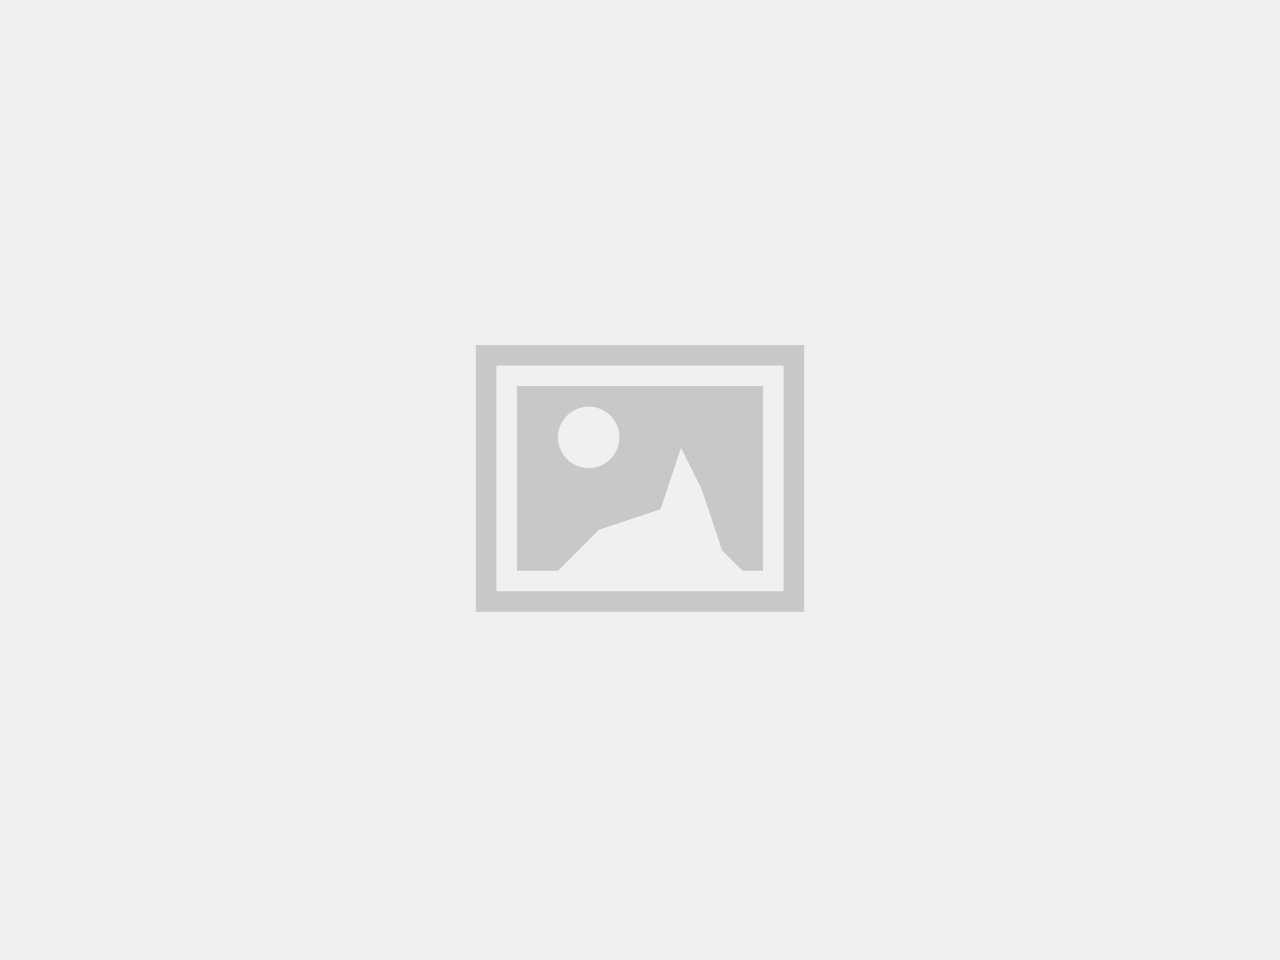 Humle - Humulus lupulus “Tettnanger”